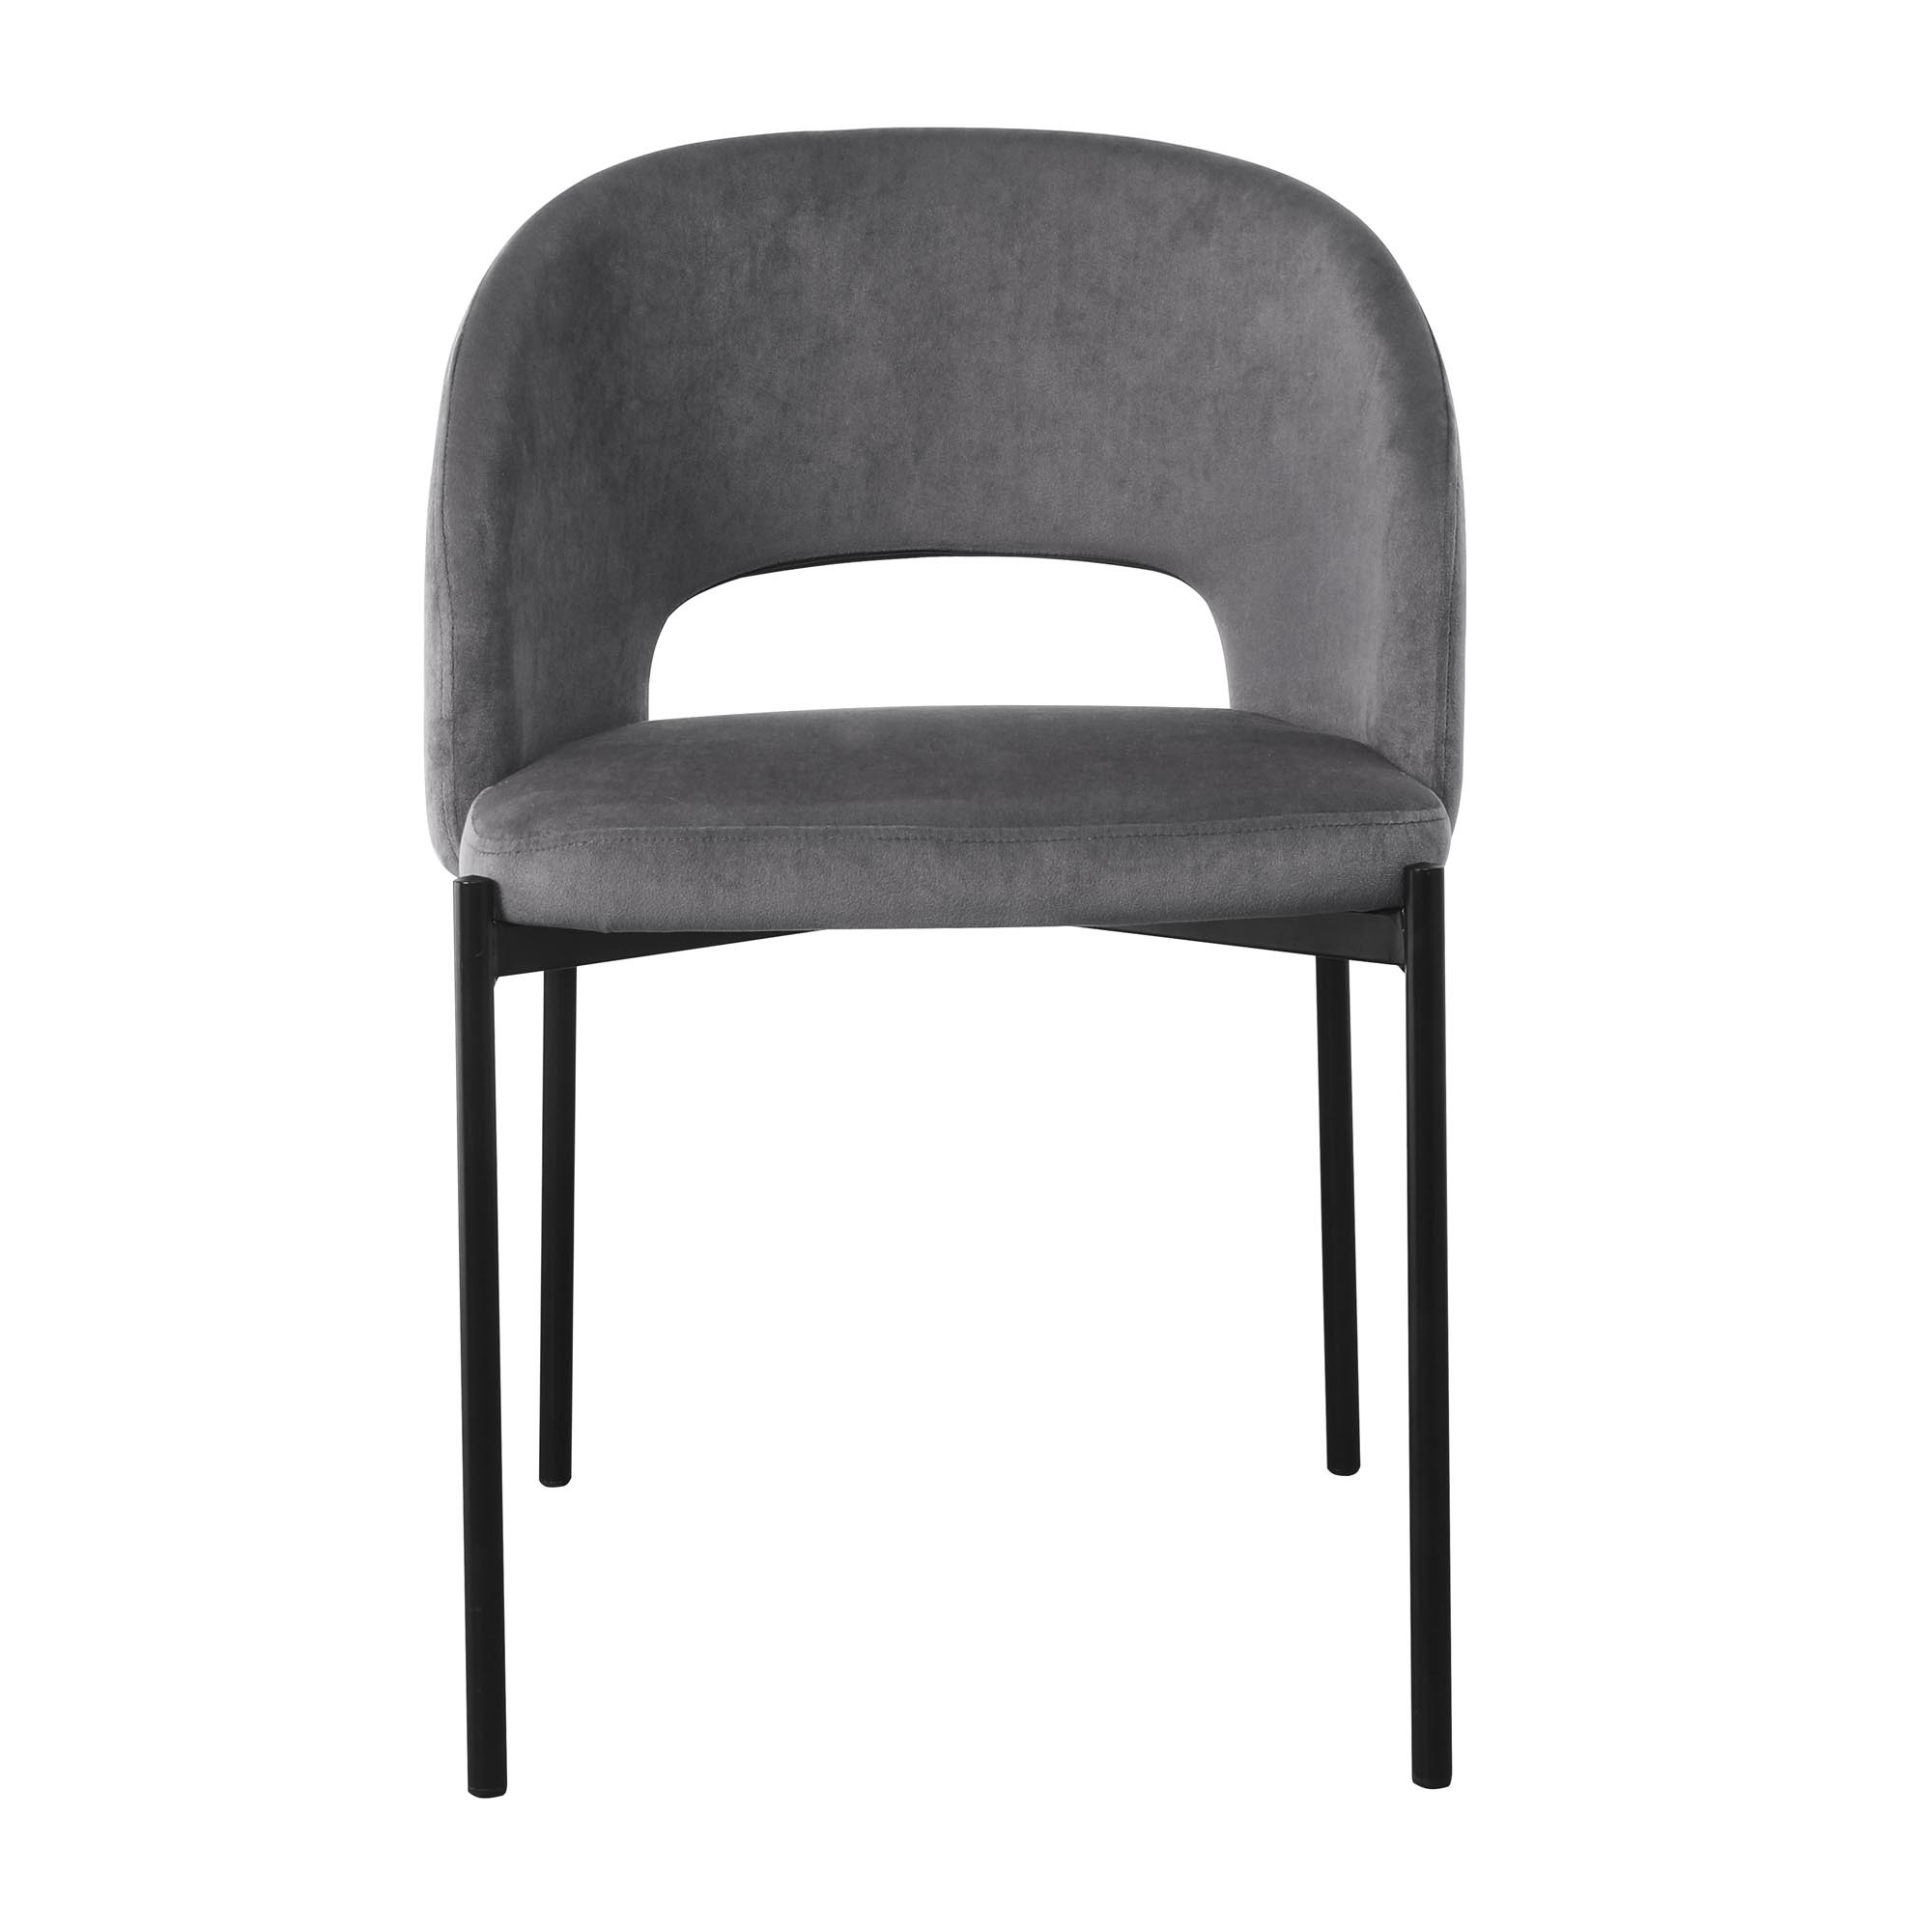 K455 krzesło, kolor: popielaty